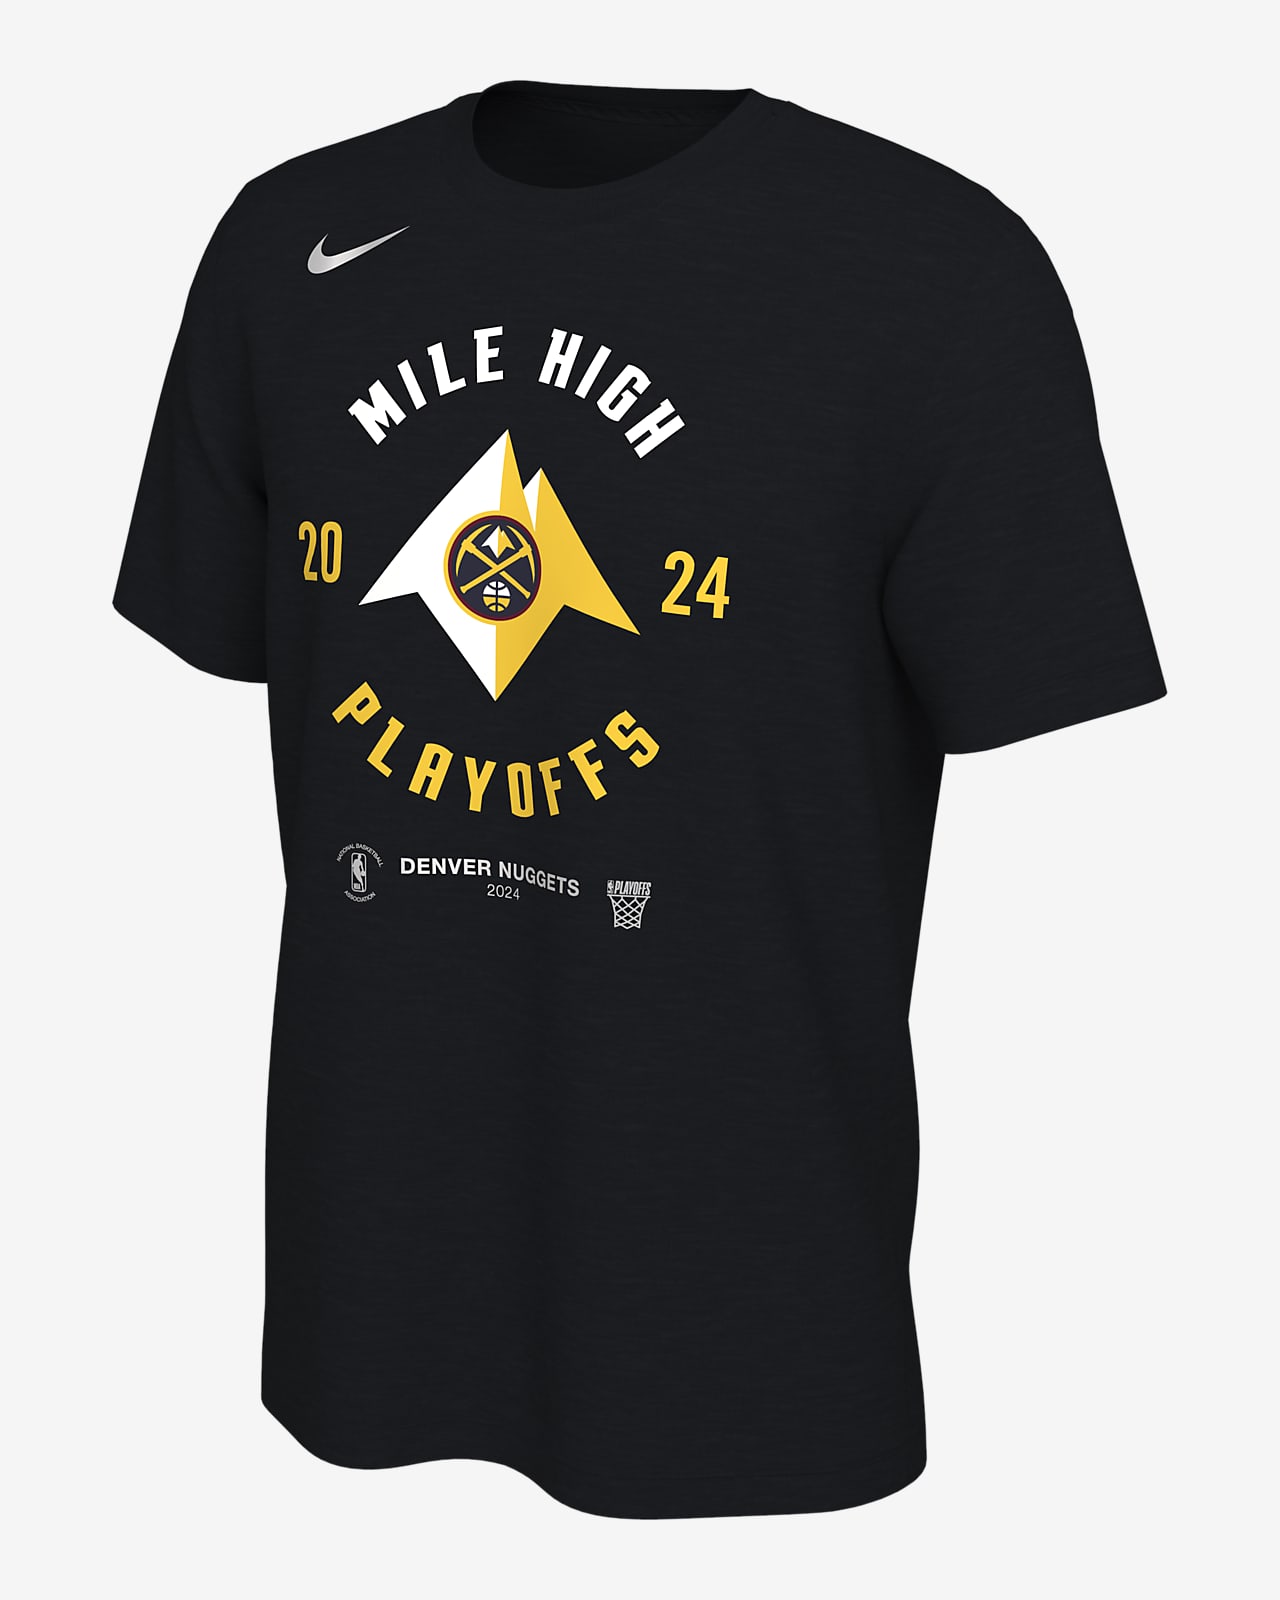 Playera Nike de la NBA para hombre Denver Nuggets